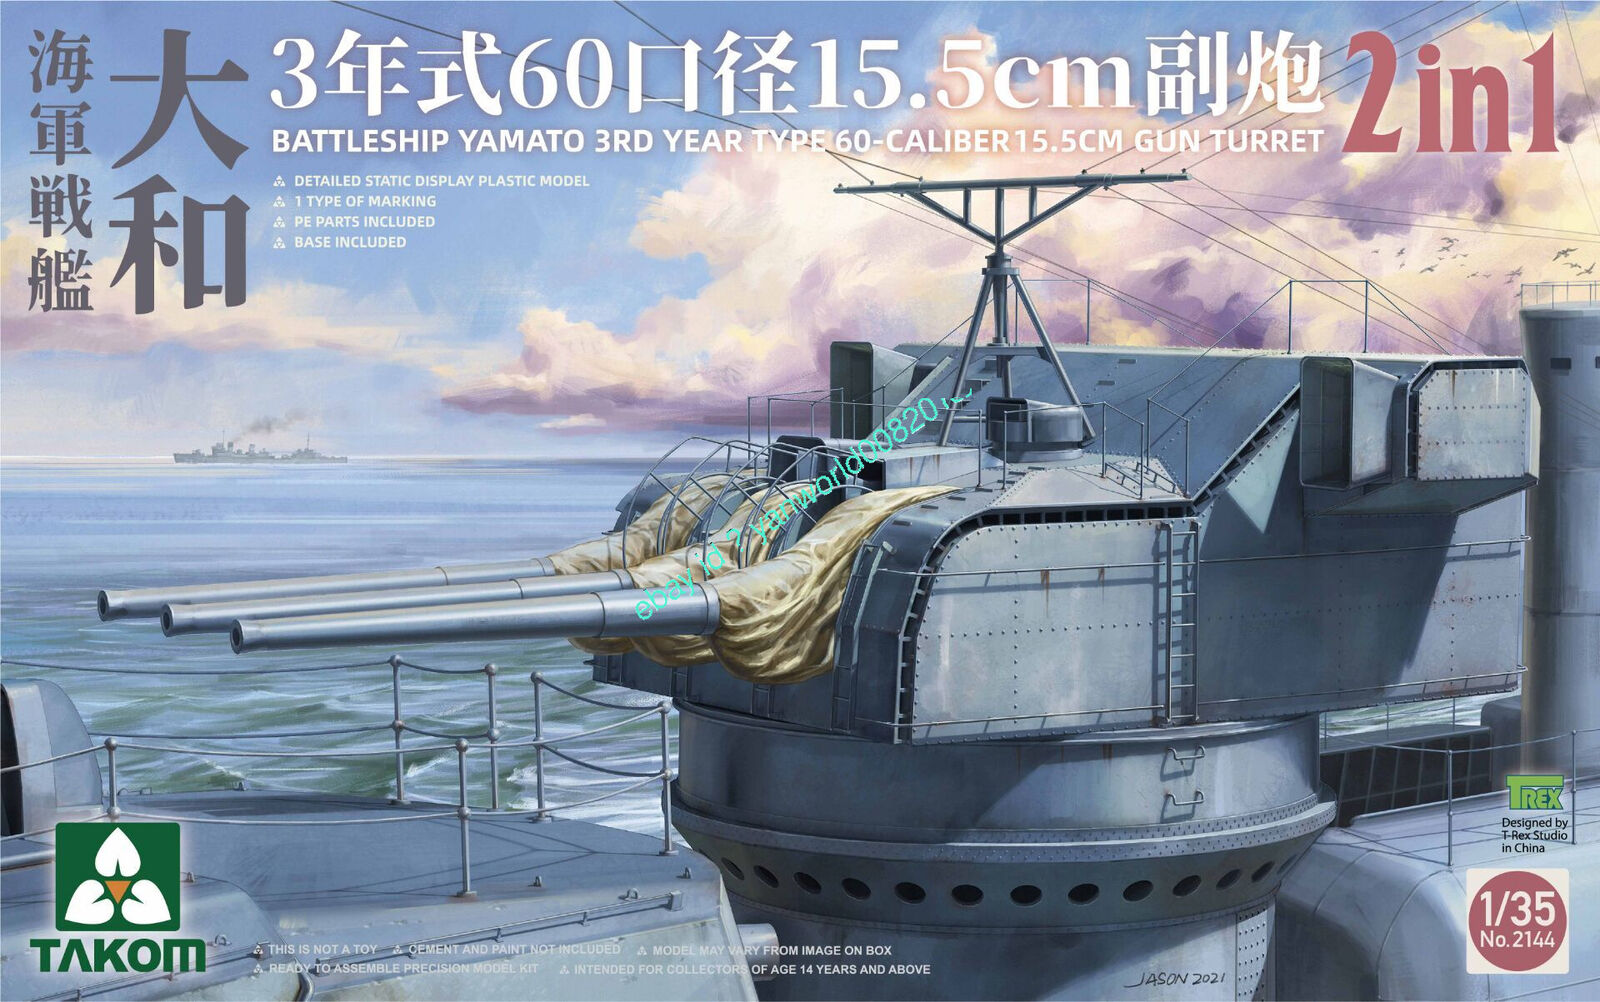 Takom New popularity 2144 1 35 Yamato Regular store 60-caliber secon 15.5cm Battleship 3-year